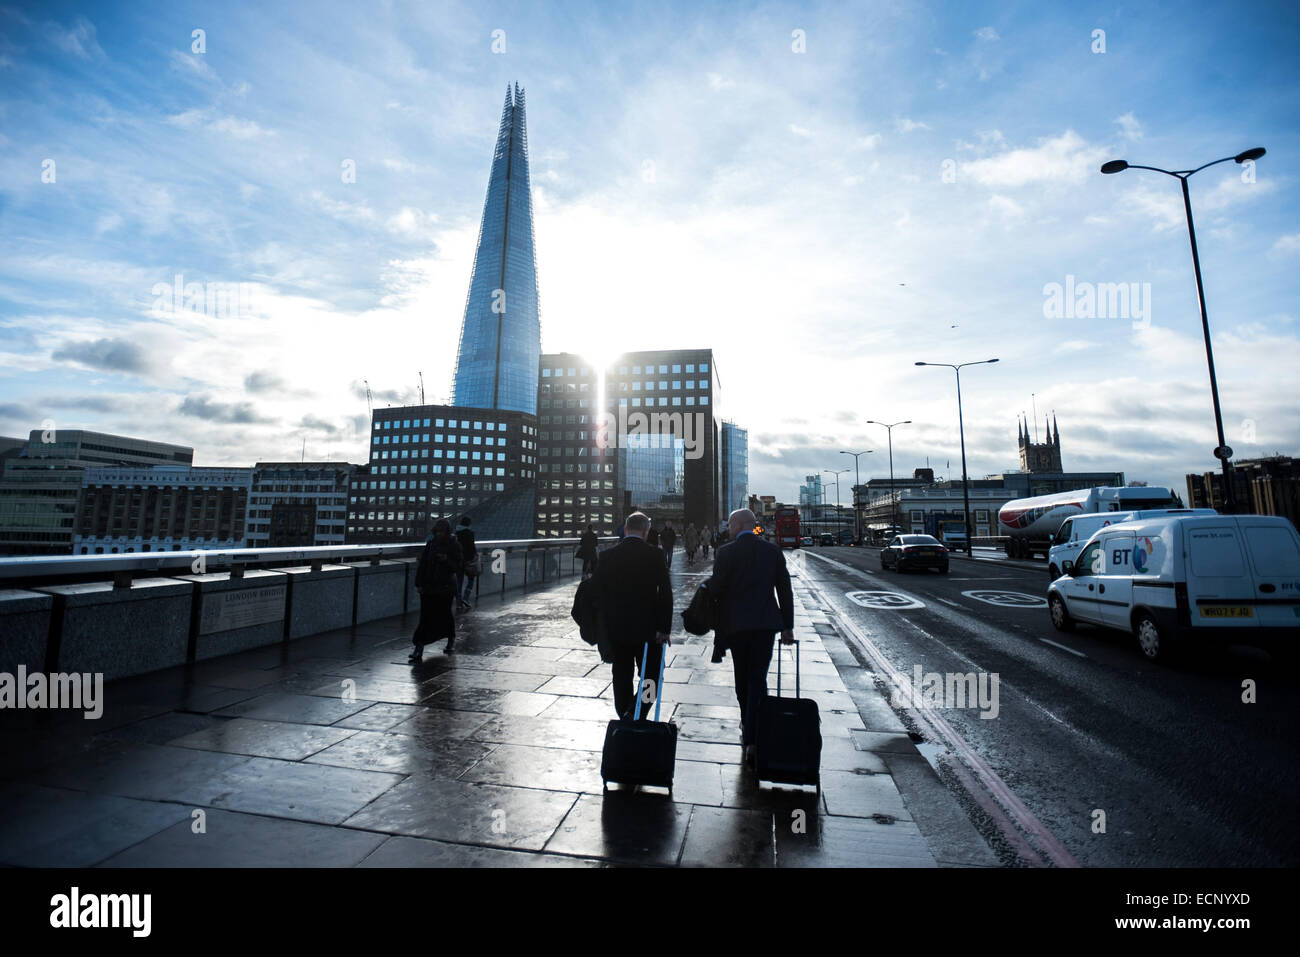 London, UK - 17. Dezember 2014: Geschäftsleute mit Rollwagen überqueren die Sonne scheint hinter Gebäuden und The Shard London Bridge Stockfoto